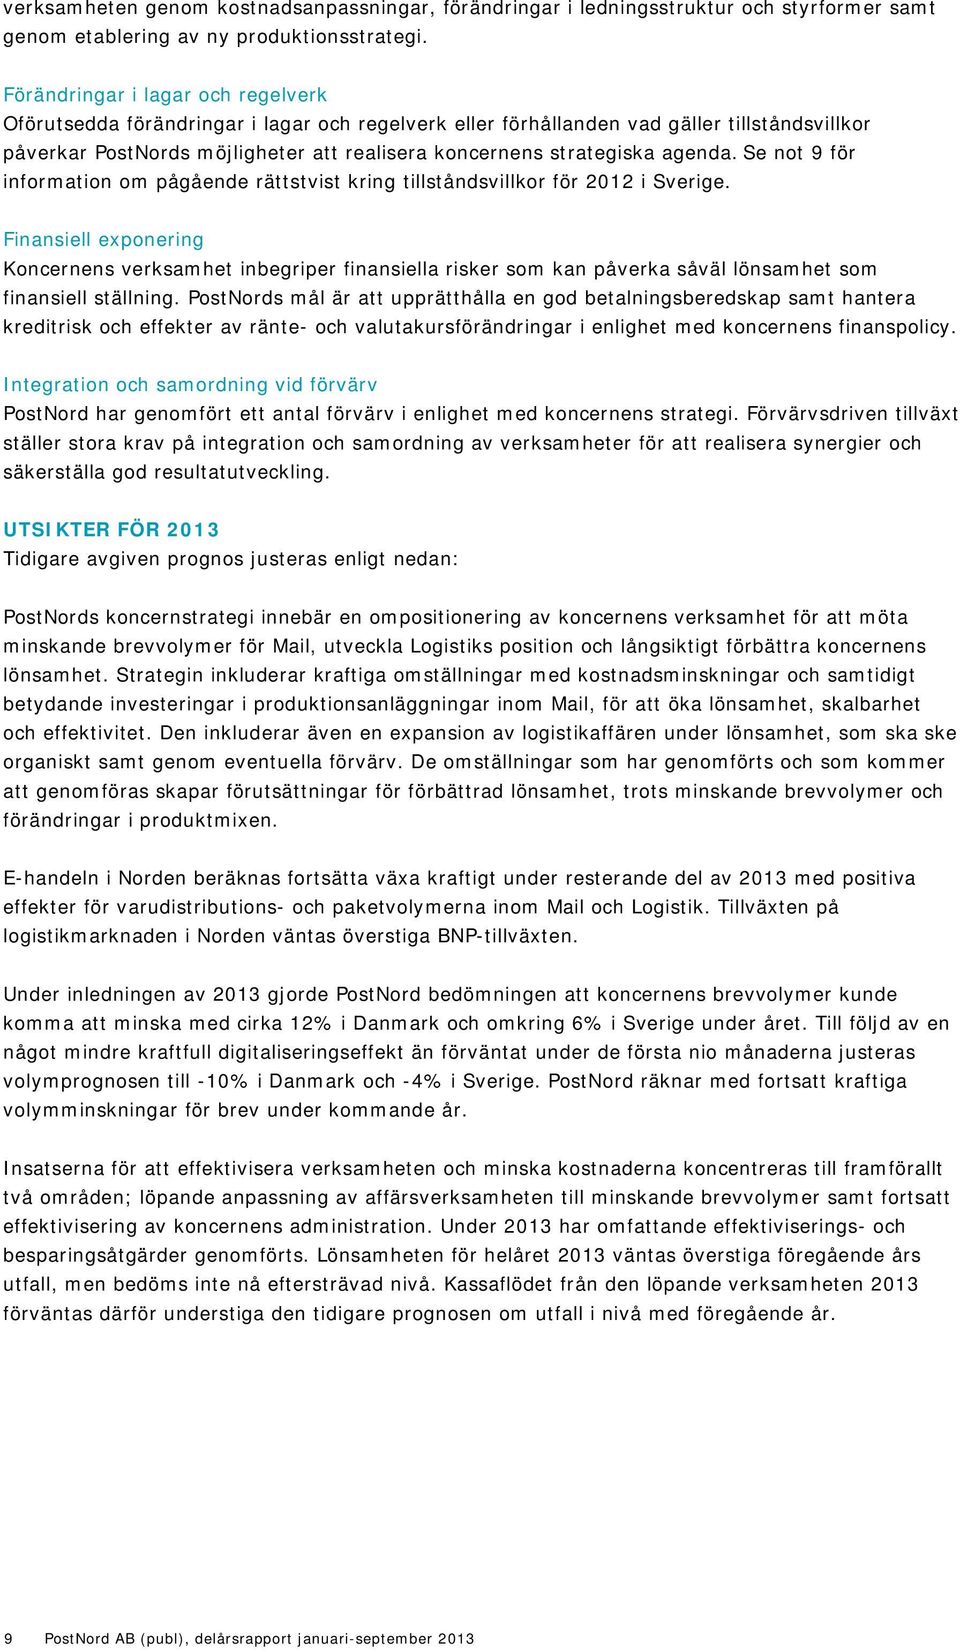 agenda. Se not 9 för information om pågående rättstvist kring tillståndsvillkor för 2012 i Sverige.